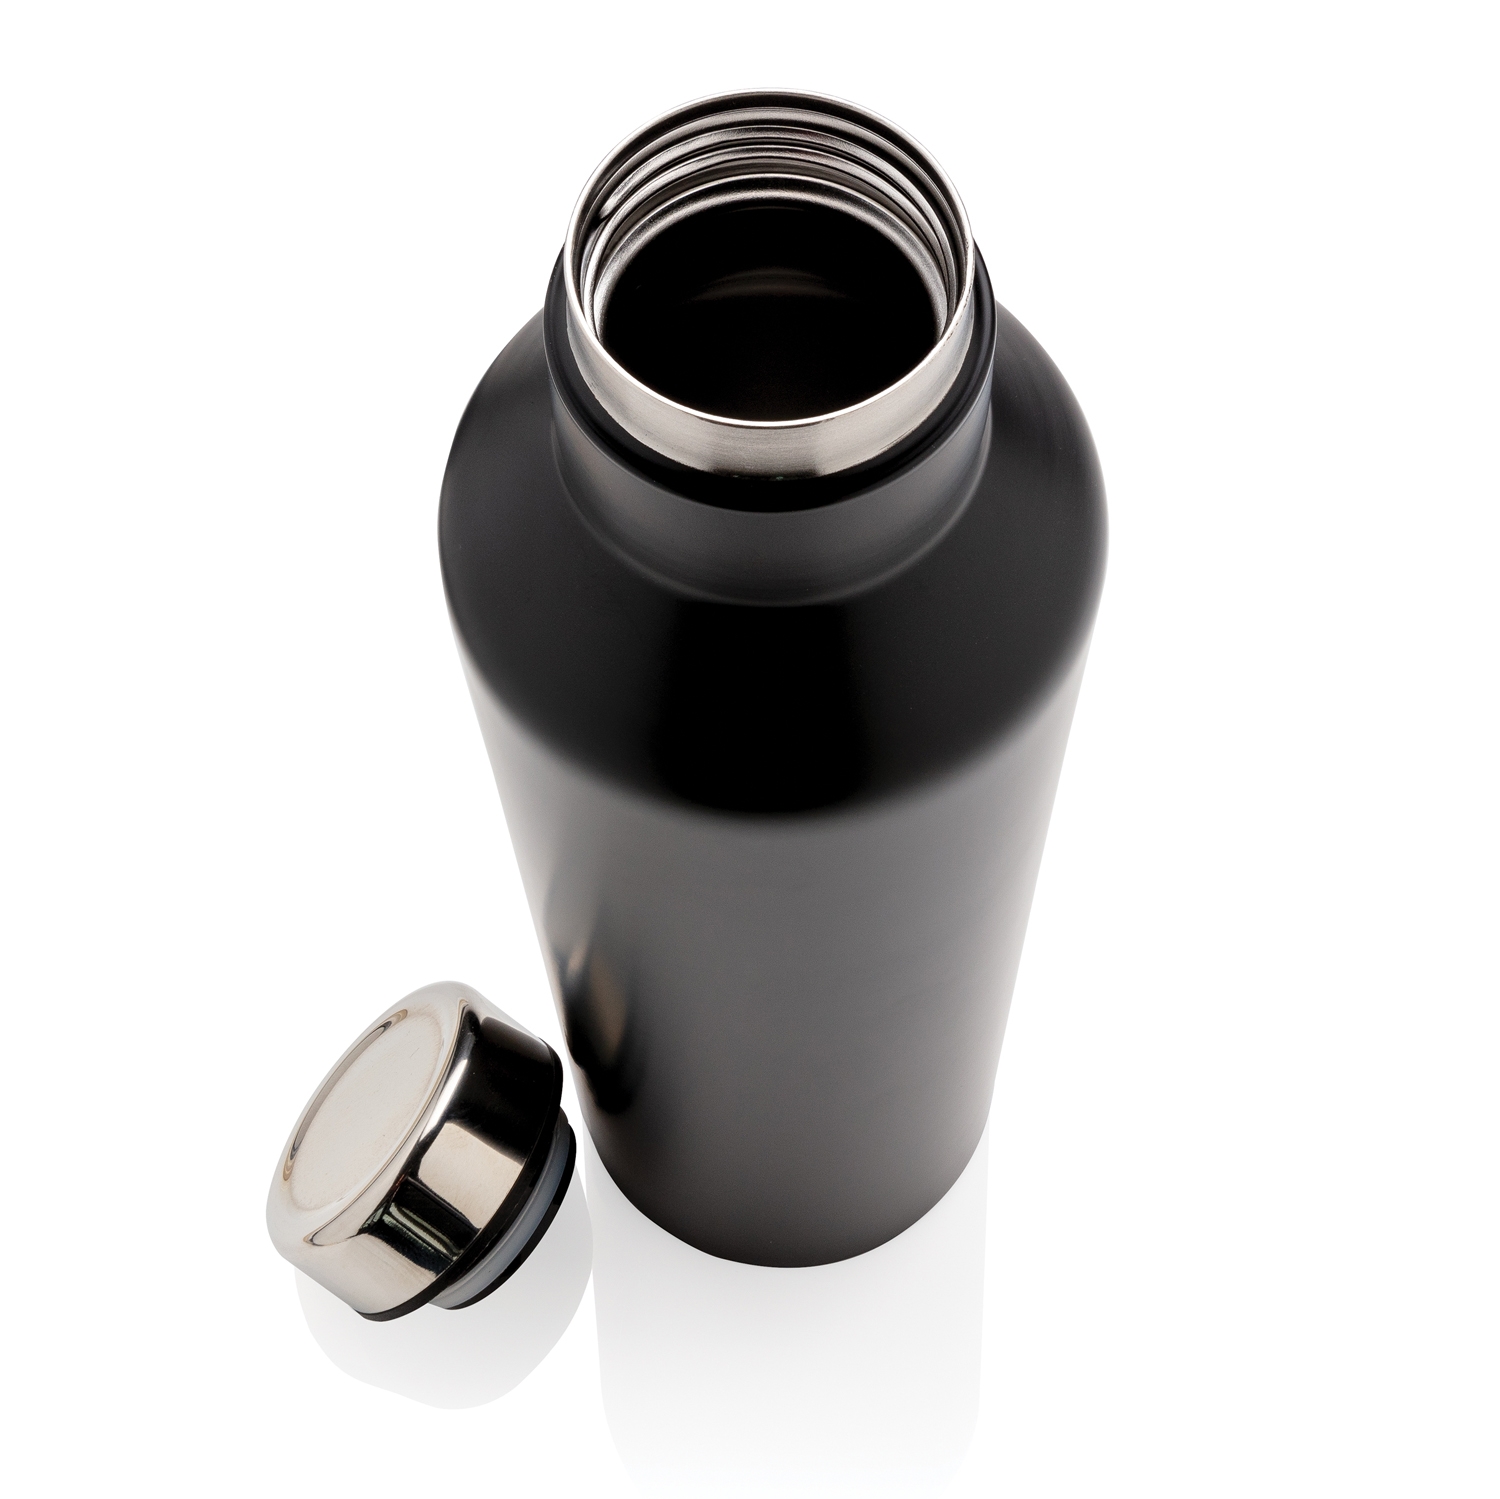 Вакуумная бутылка для воды Modern из нержавеющей стали, 500 мл, черный, нержавеющая сталь; pp